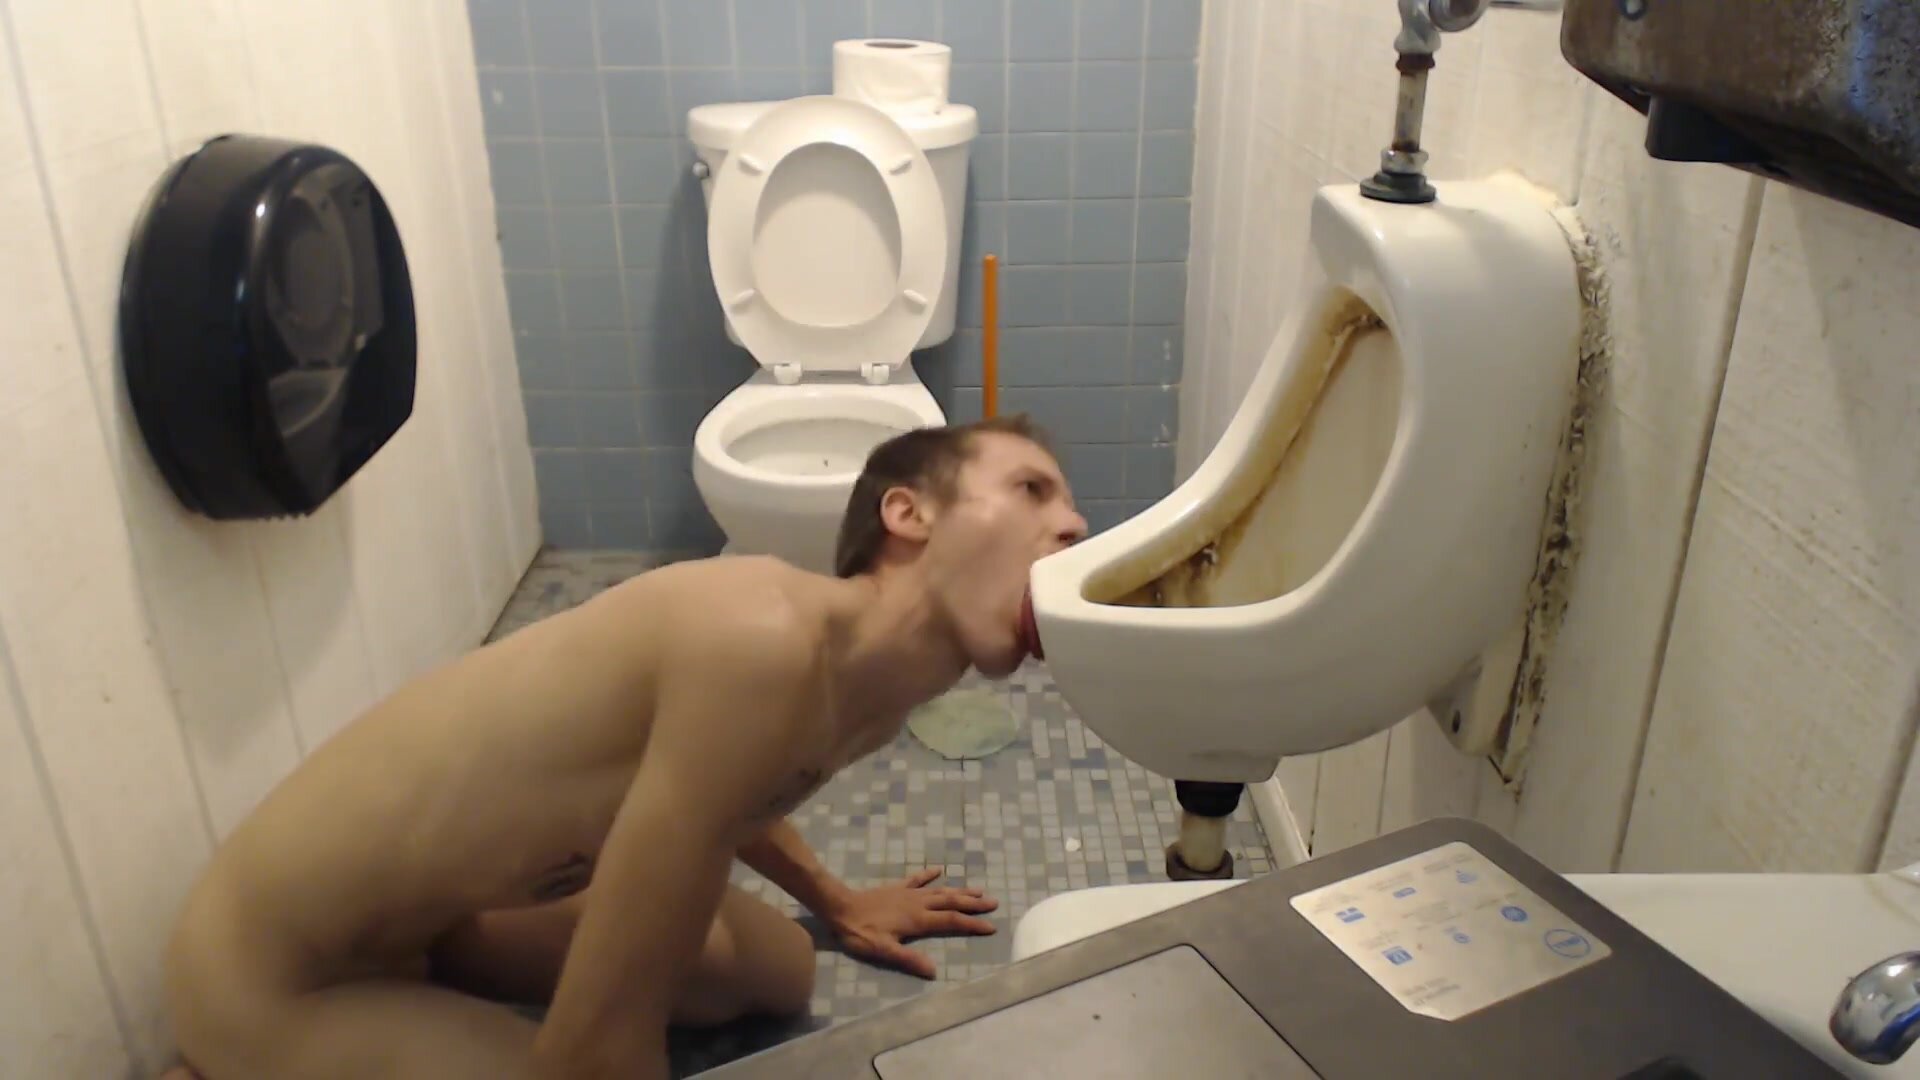 How faggots properly clean a urinal